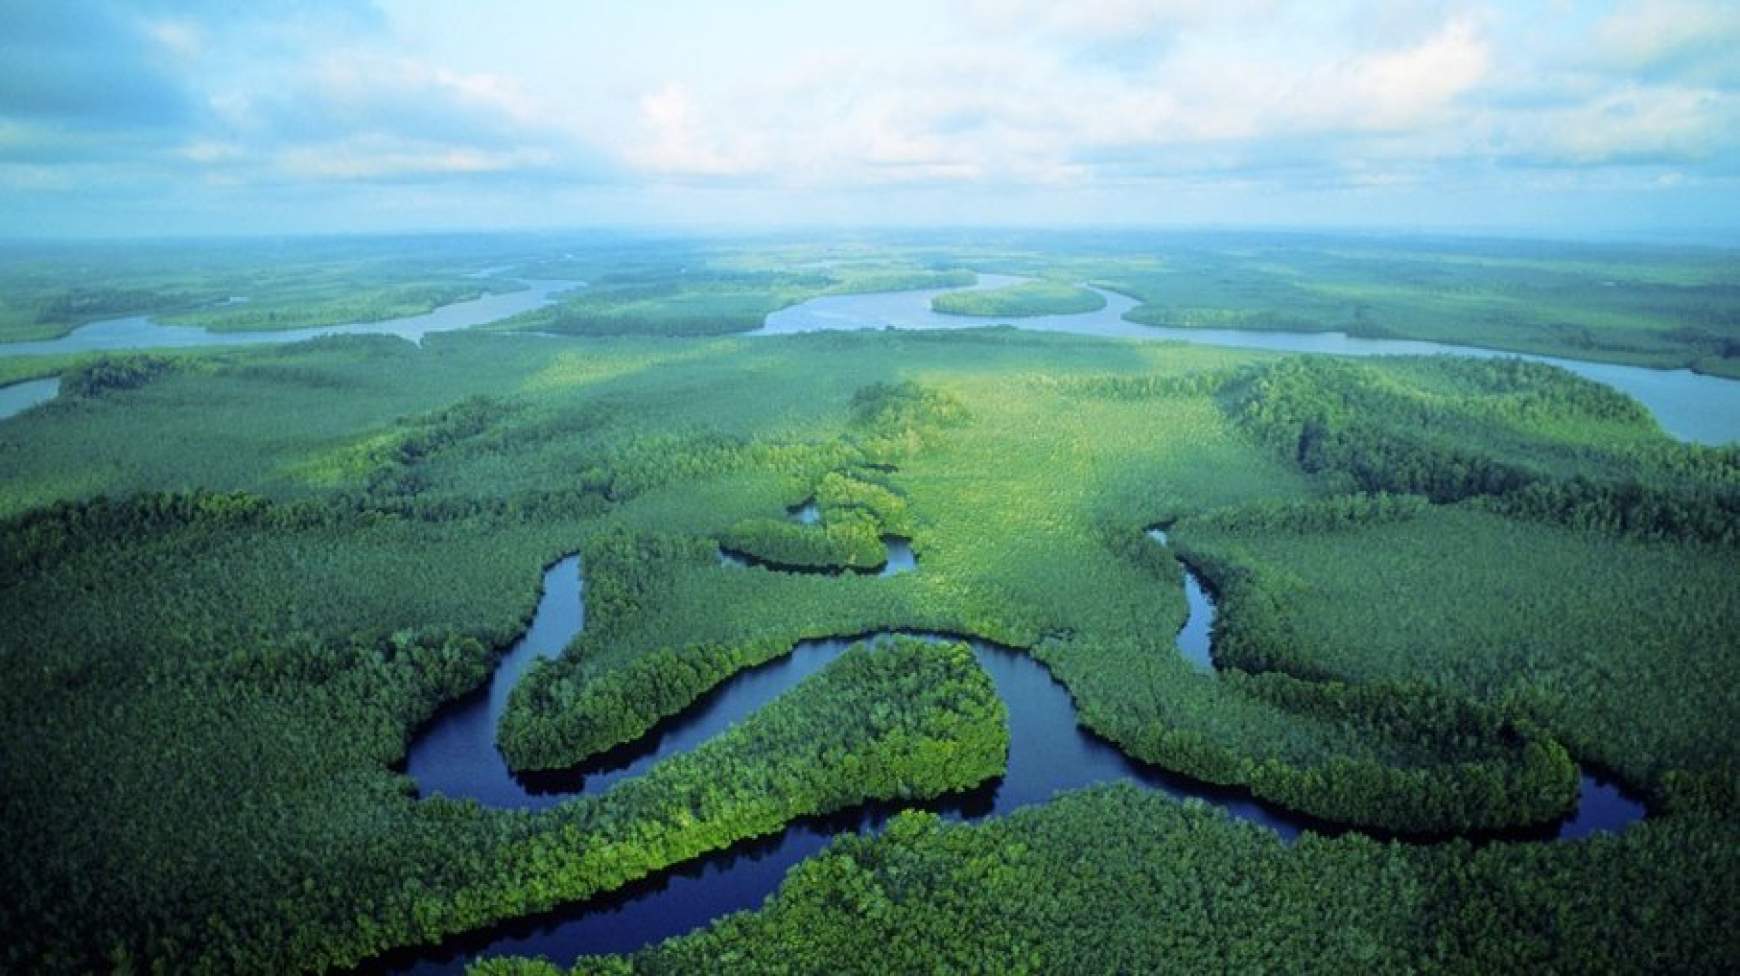 Реки полноводные весь год. Река Конго в Африке. Впадина Конго. Бассейн реки Конго. Долина реки Конго.